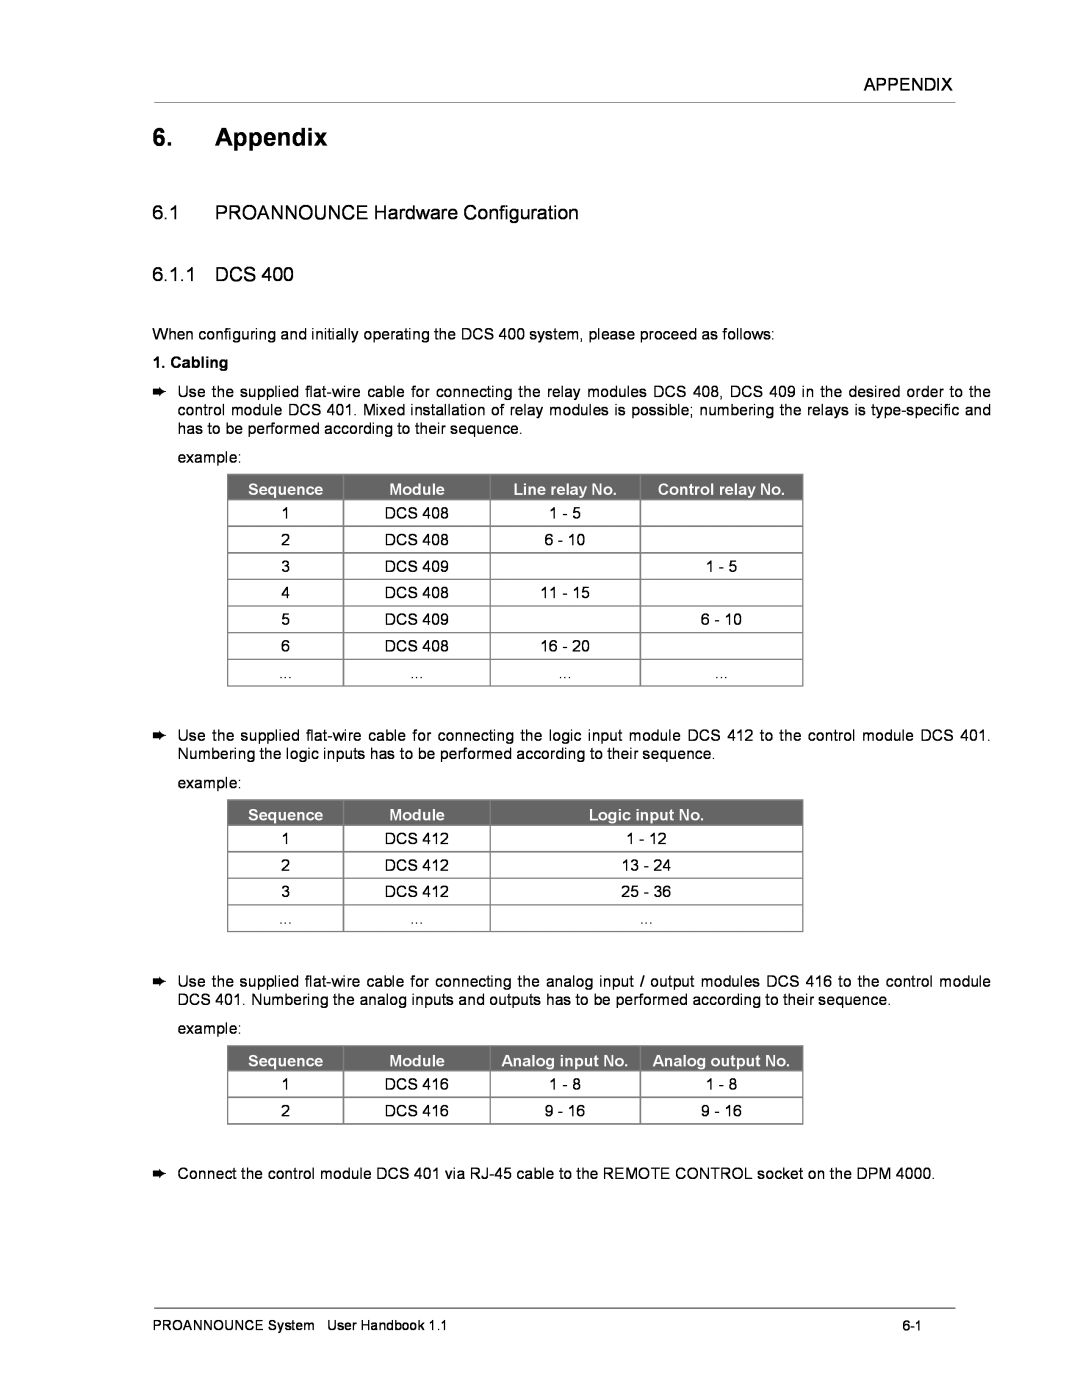 Dynacord DPM 4000 manual Appendix, 6.1PROANNOUNCE Hardware Configuration 6.1.1 DCS 